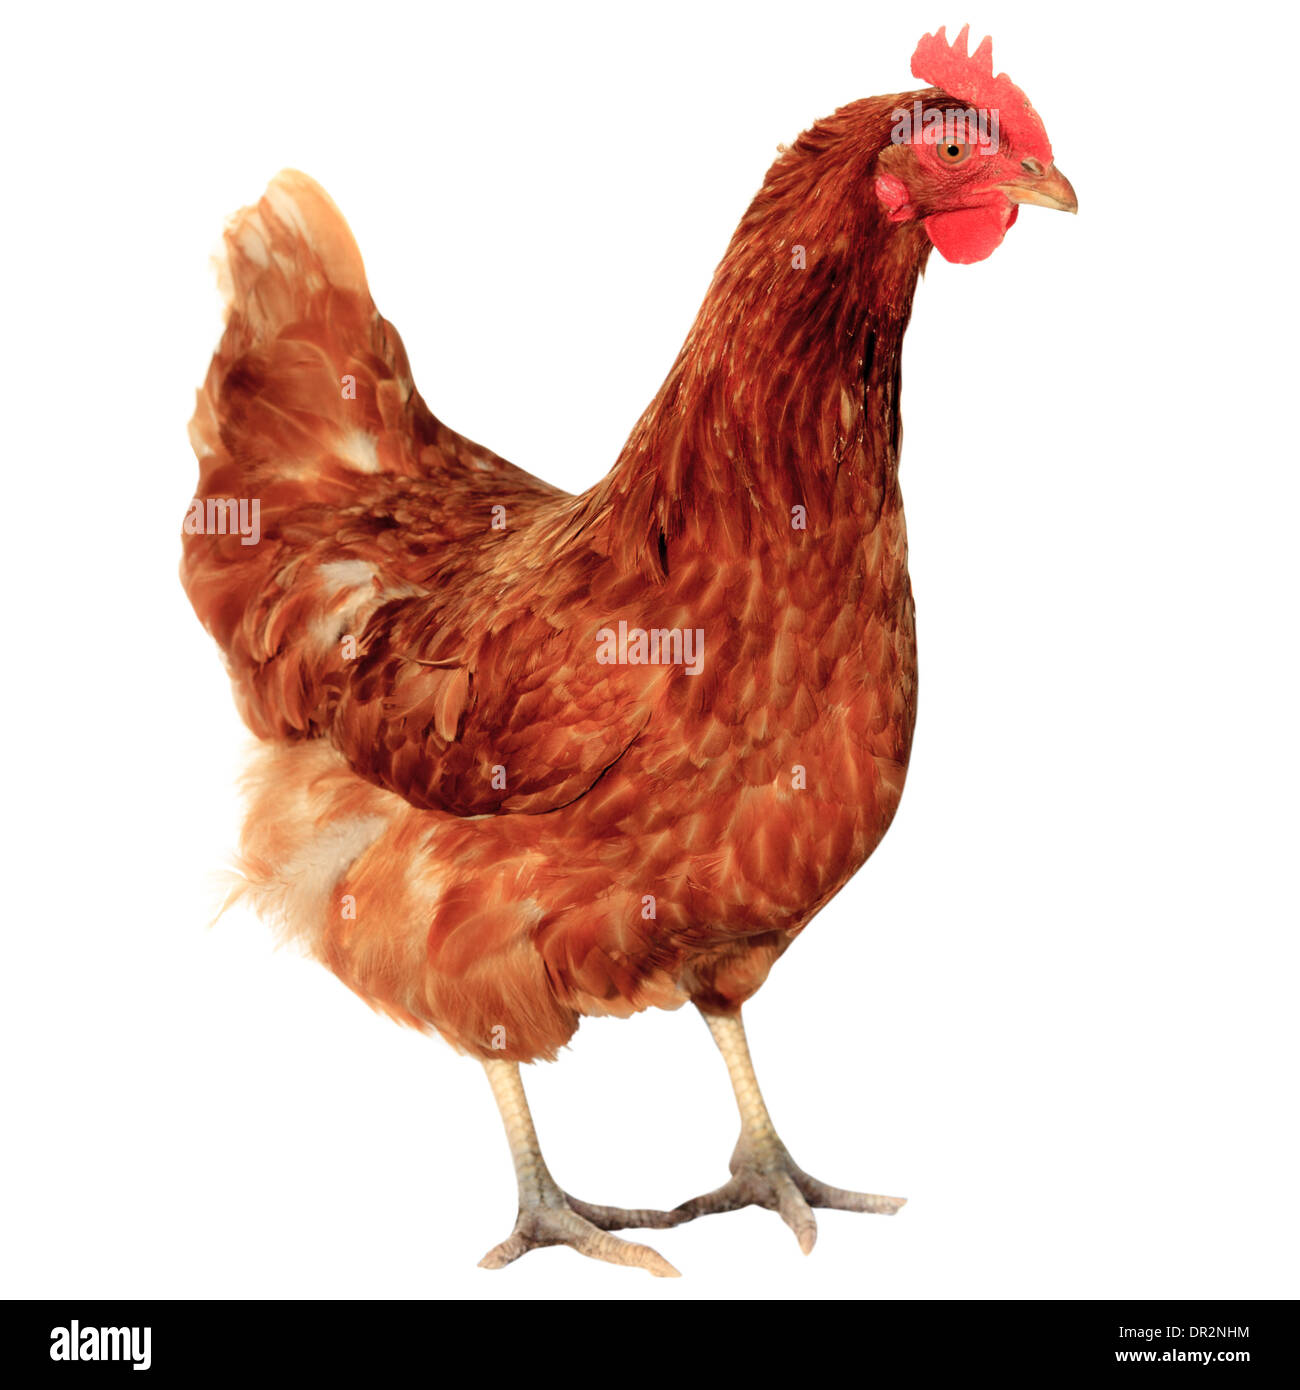 Курица изолированно на белом фоне. Chicken isolated on white background. Stock Photo